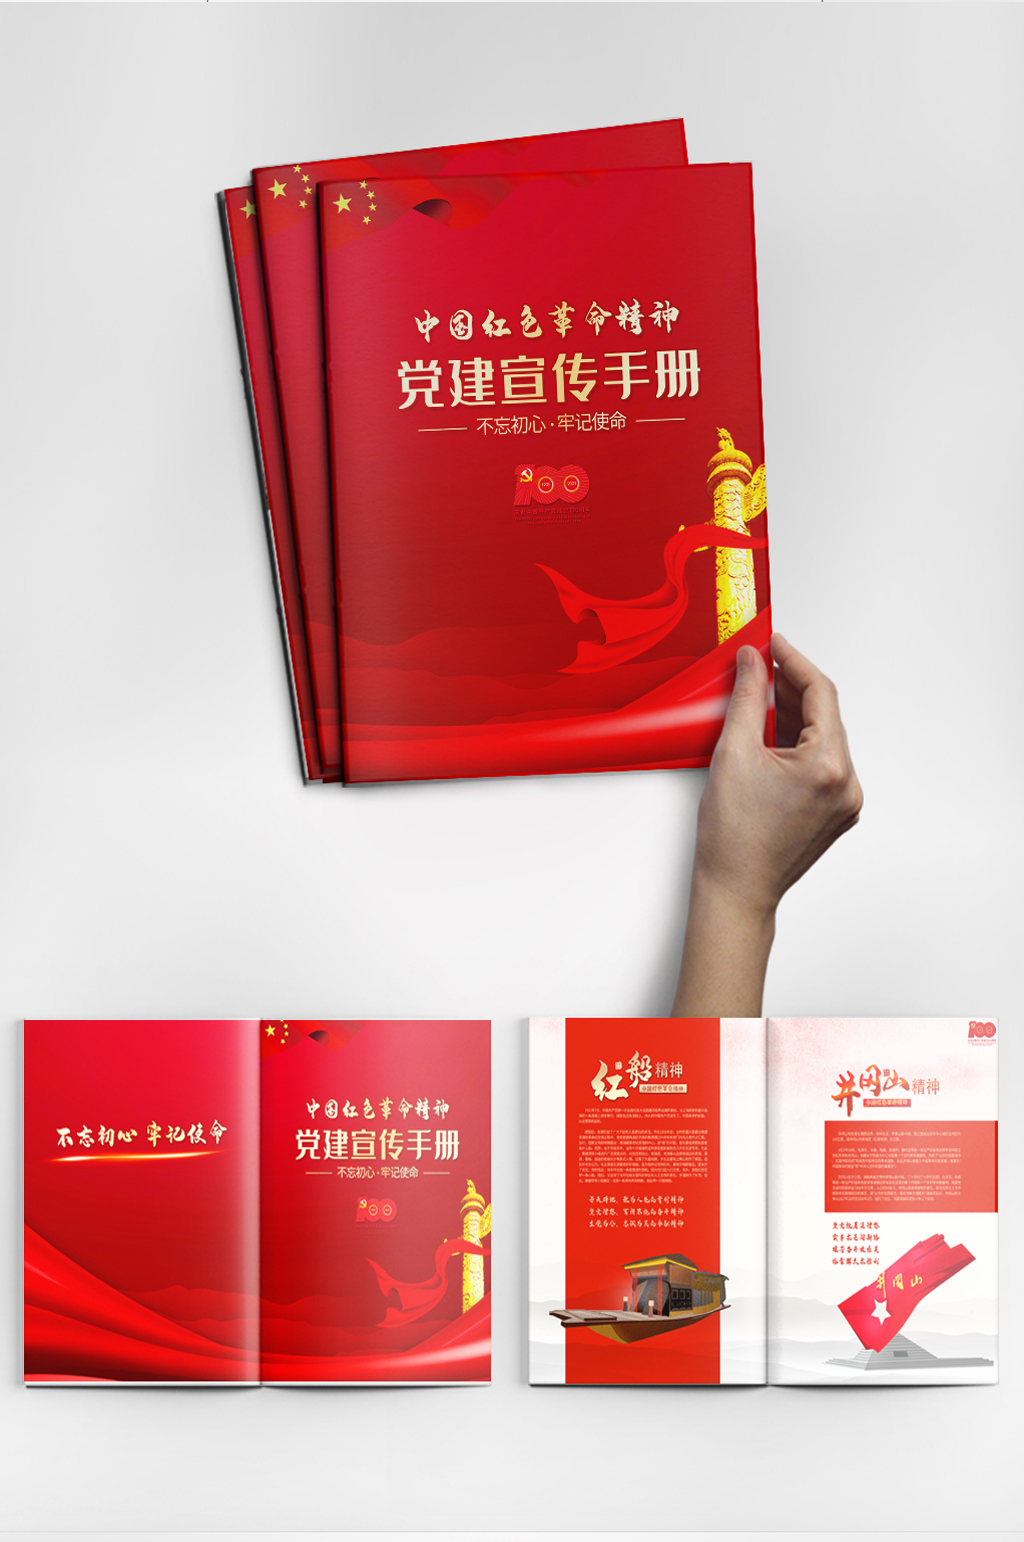 红色革命封面设计素材图片